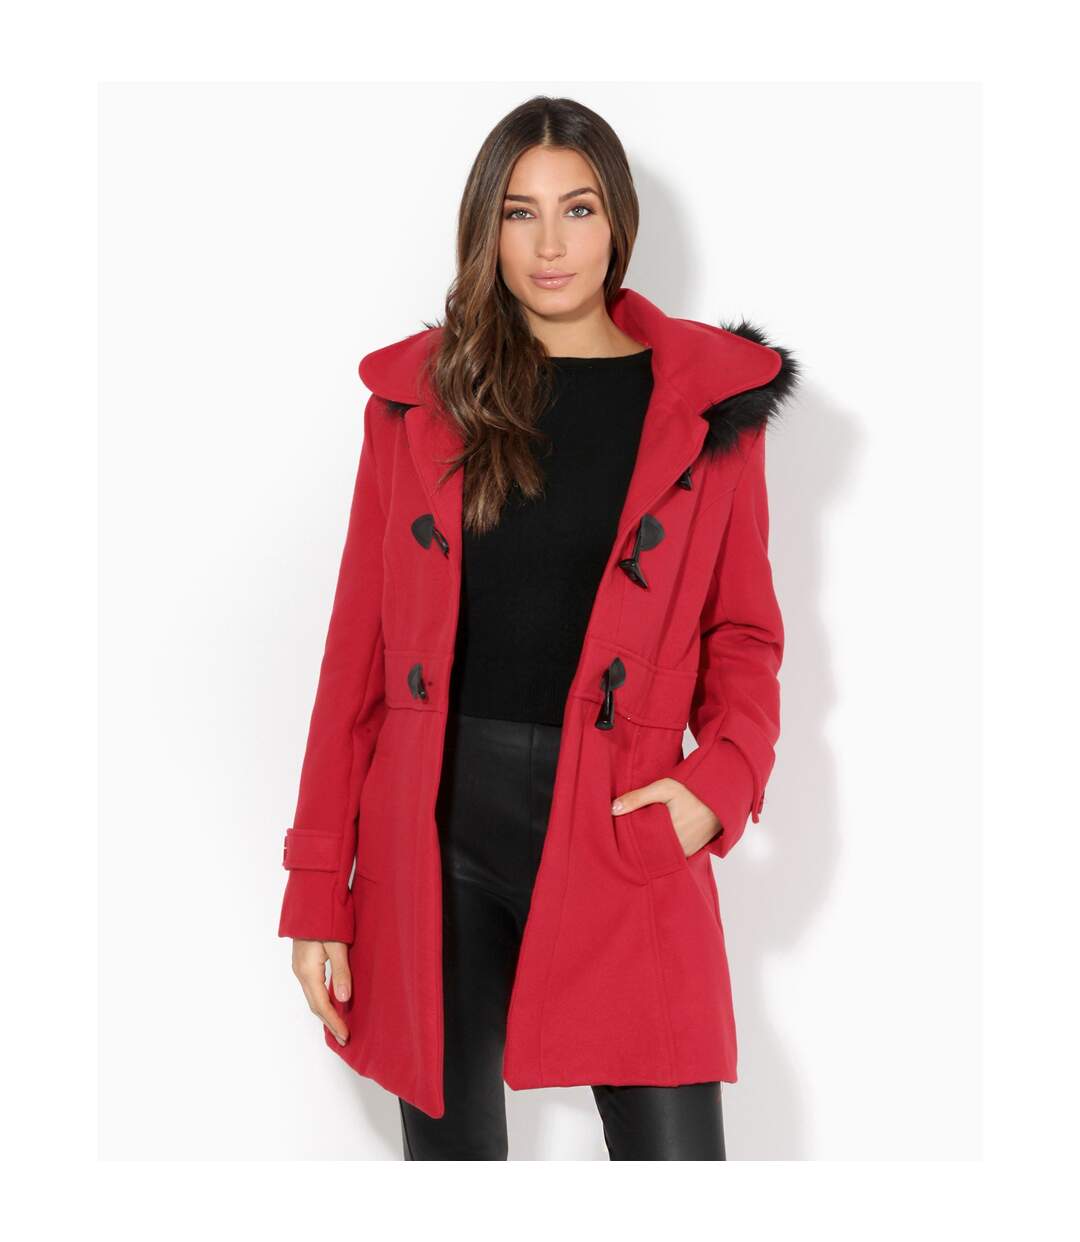 Krisp Womens/Ladies Hooded Rockabilly Duffle Coat (Red) - UTKP113